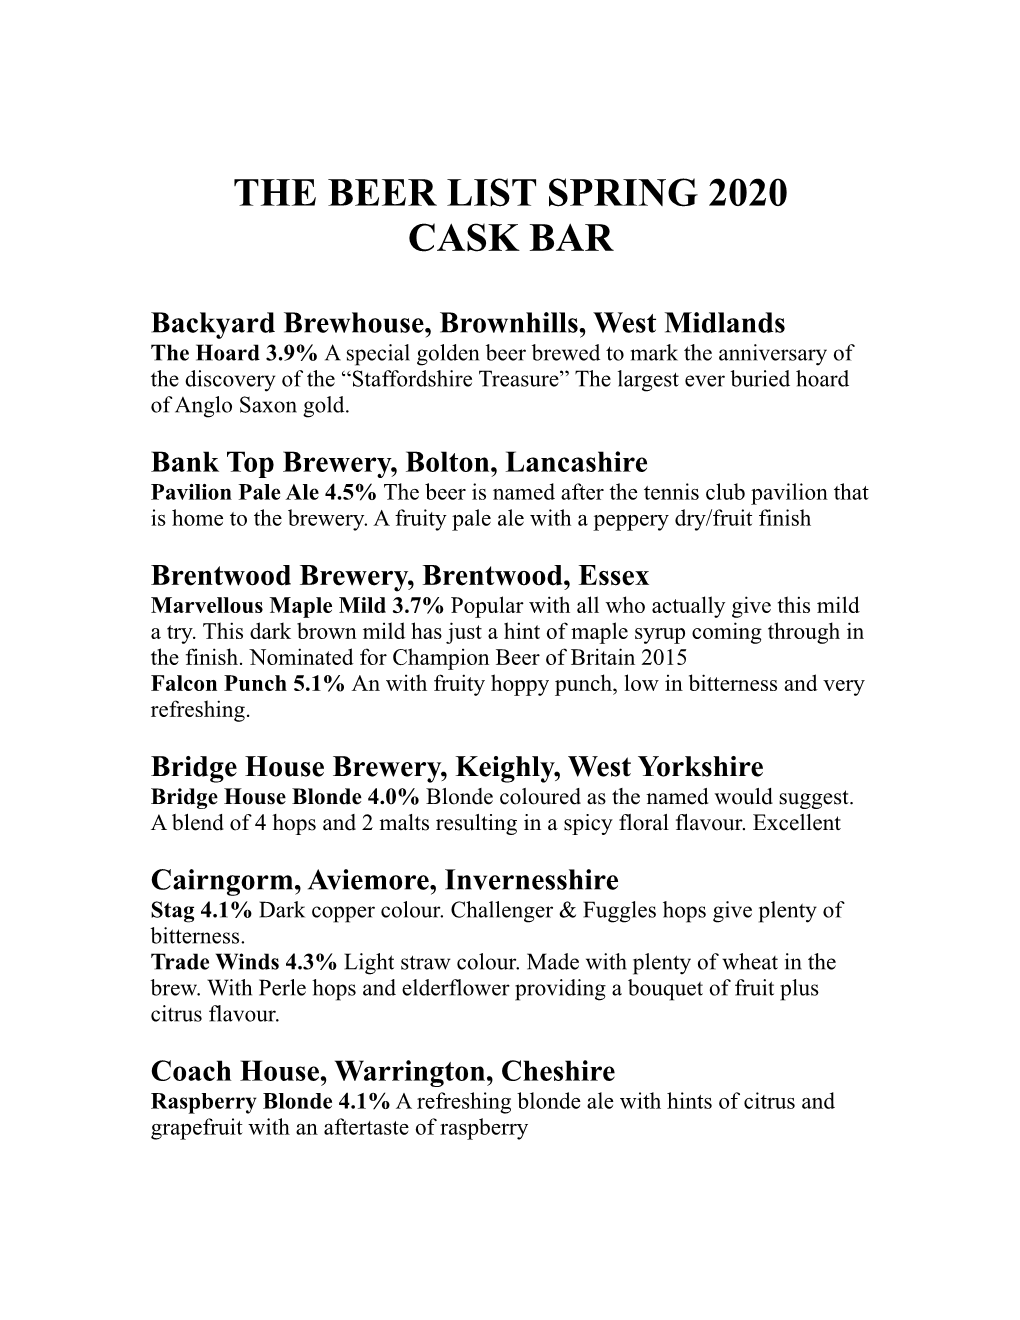 The Beer List Spring 2020 Cask Bar